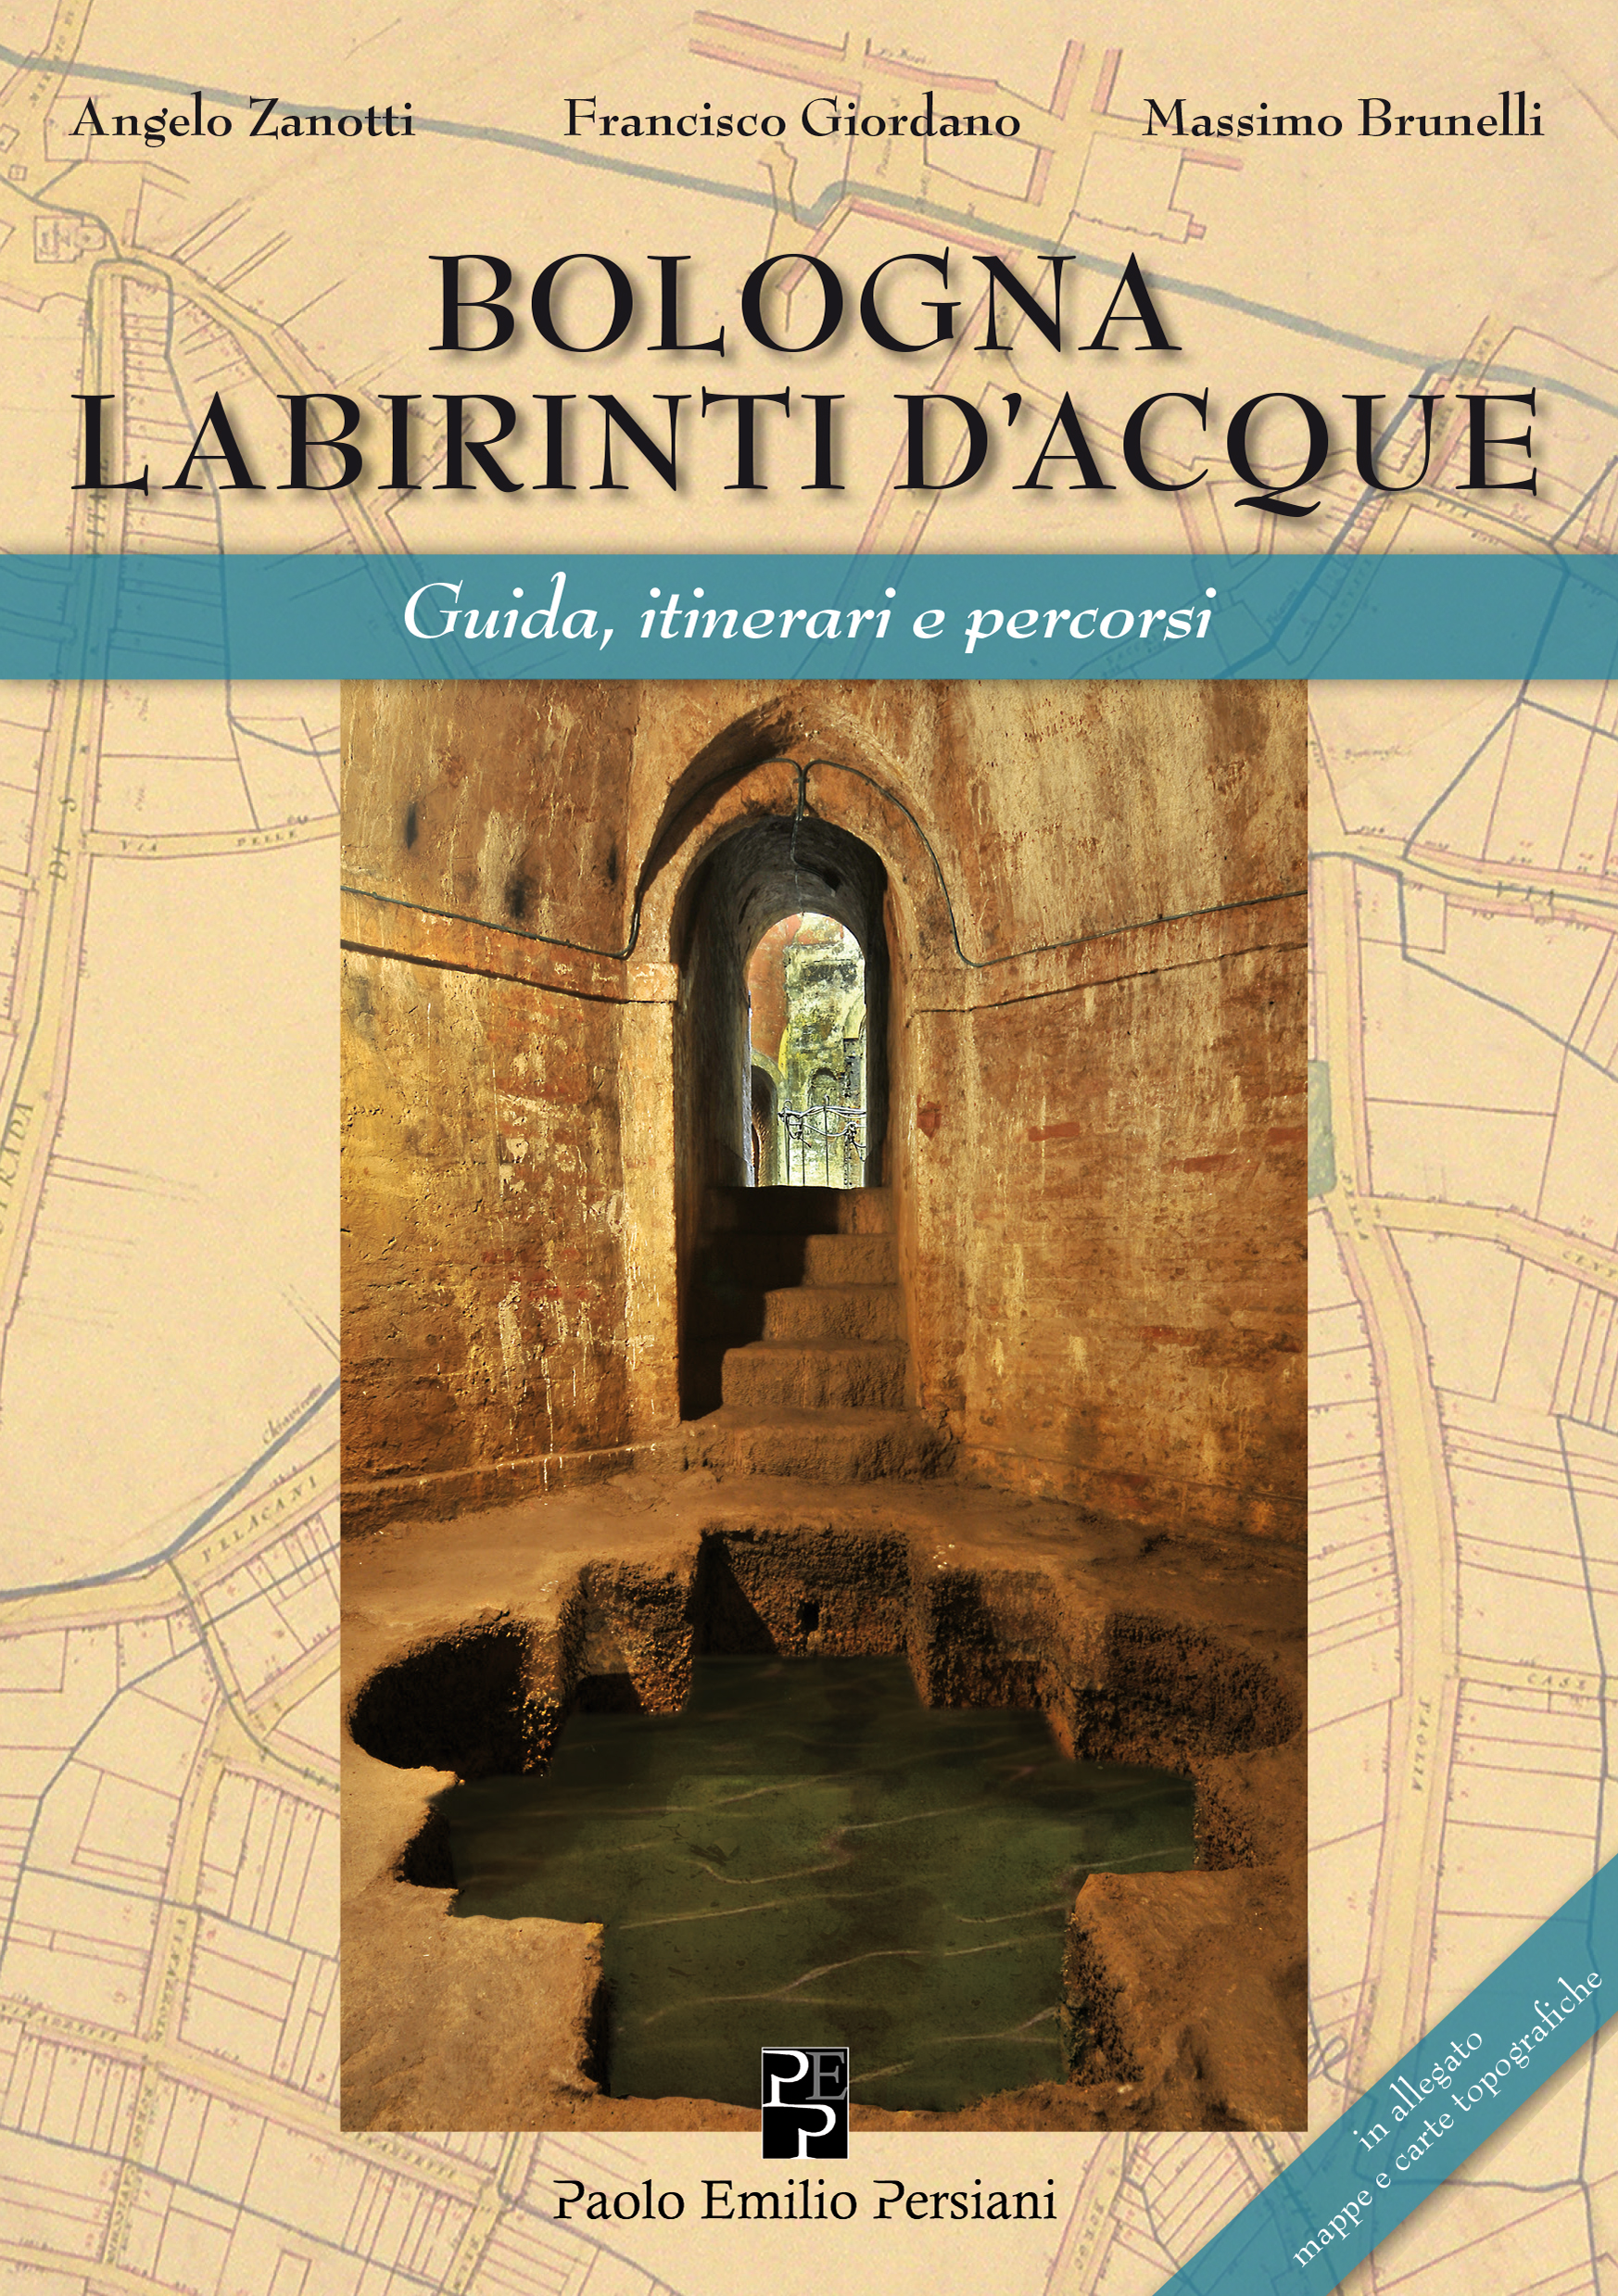 Un libro a Palazzo: incontro con Francisco Giordano e Angelo Zanotti